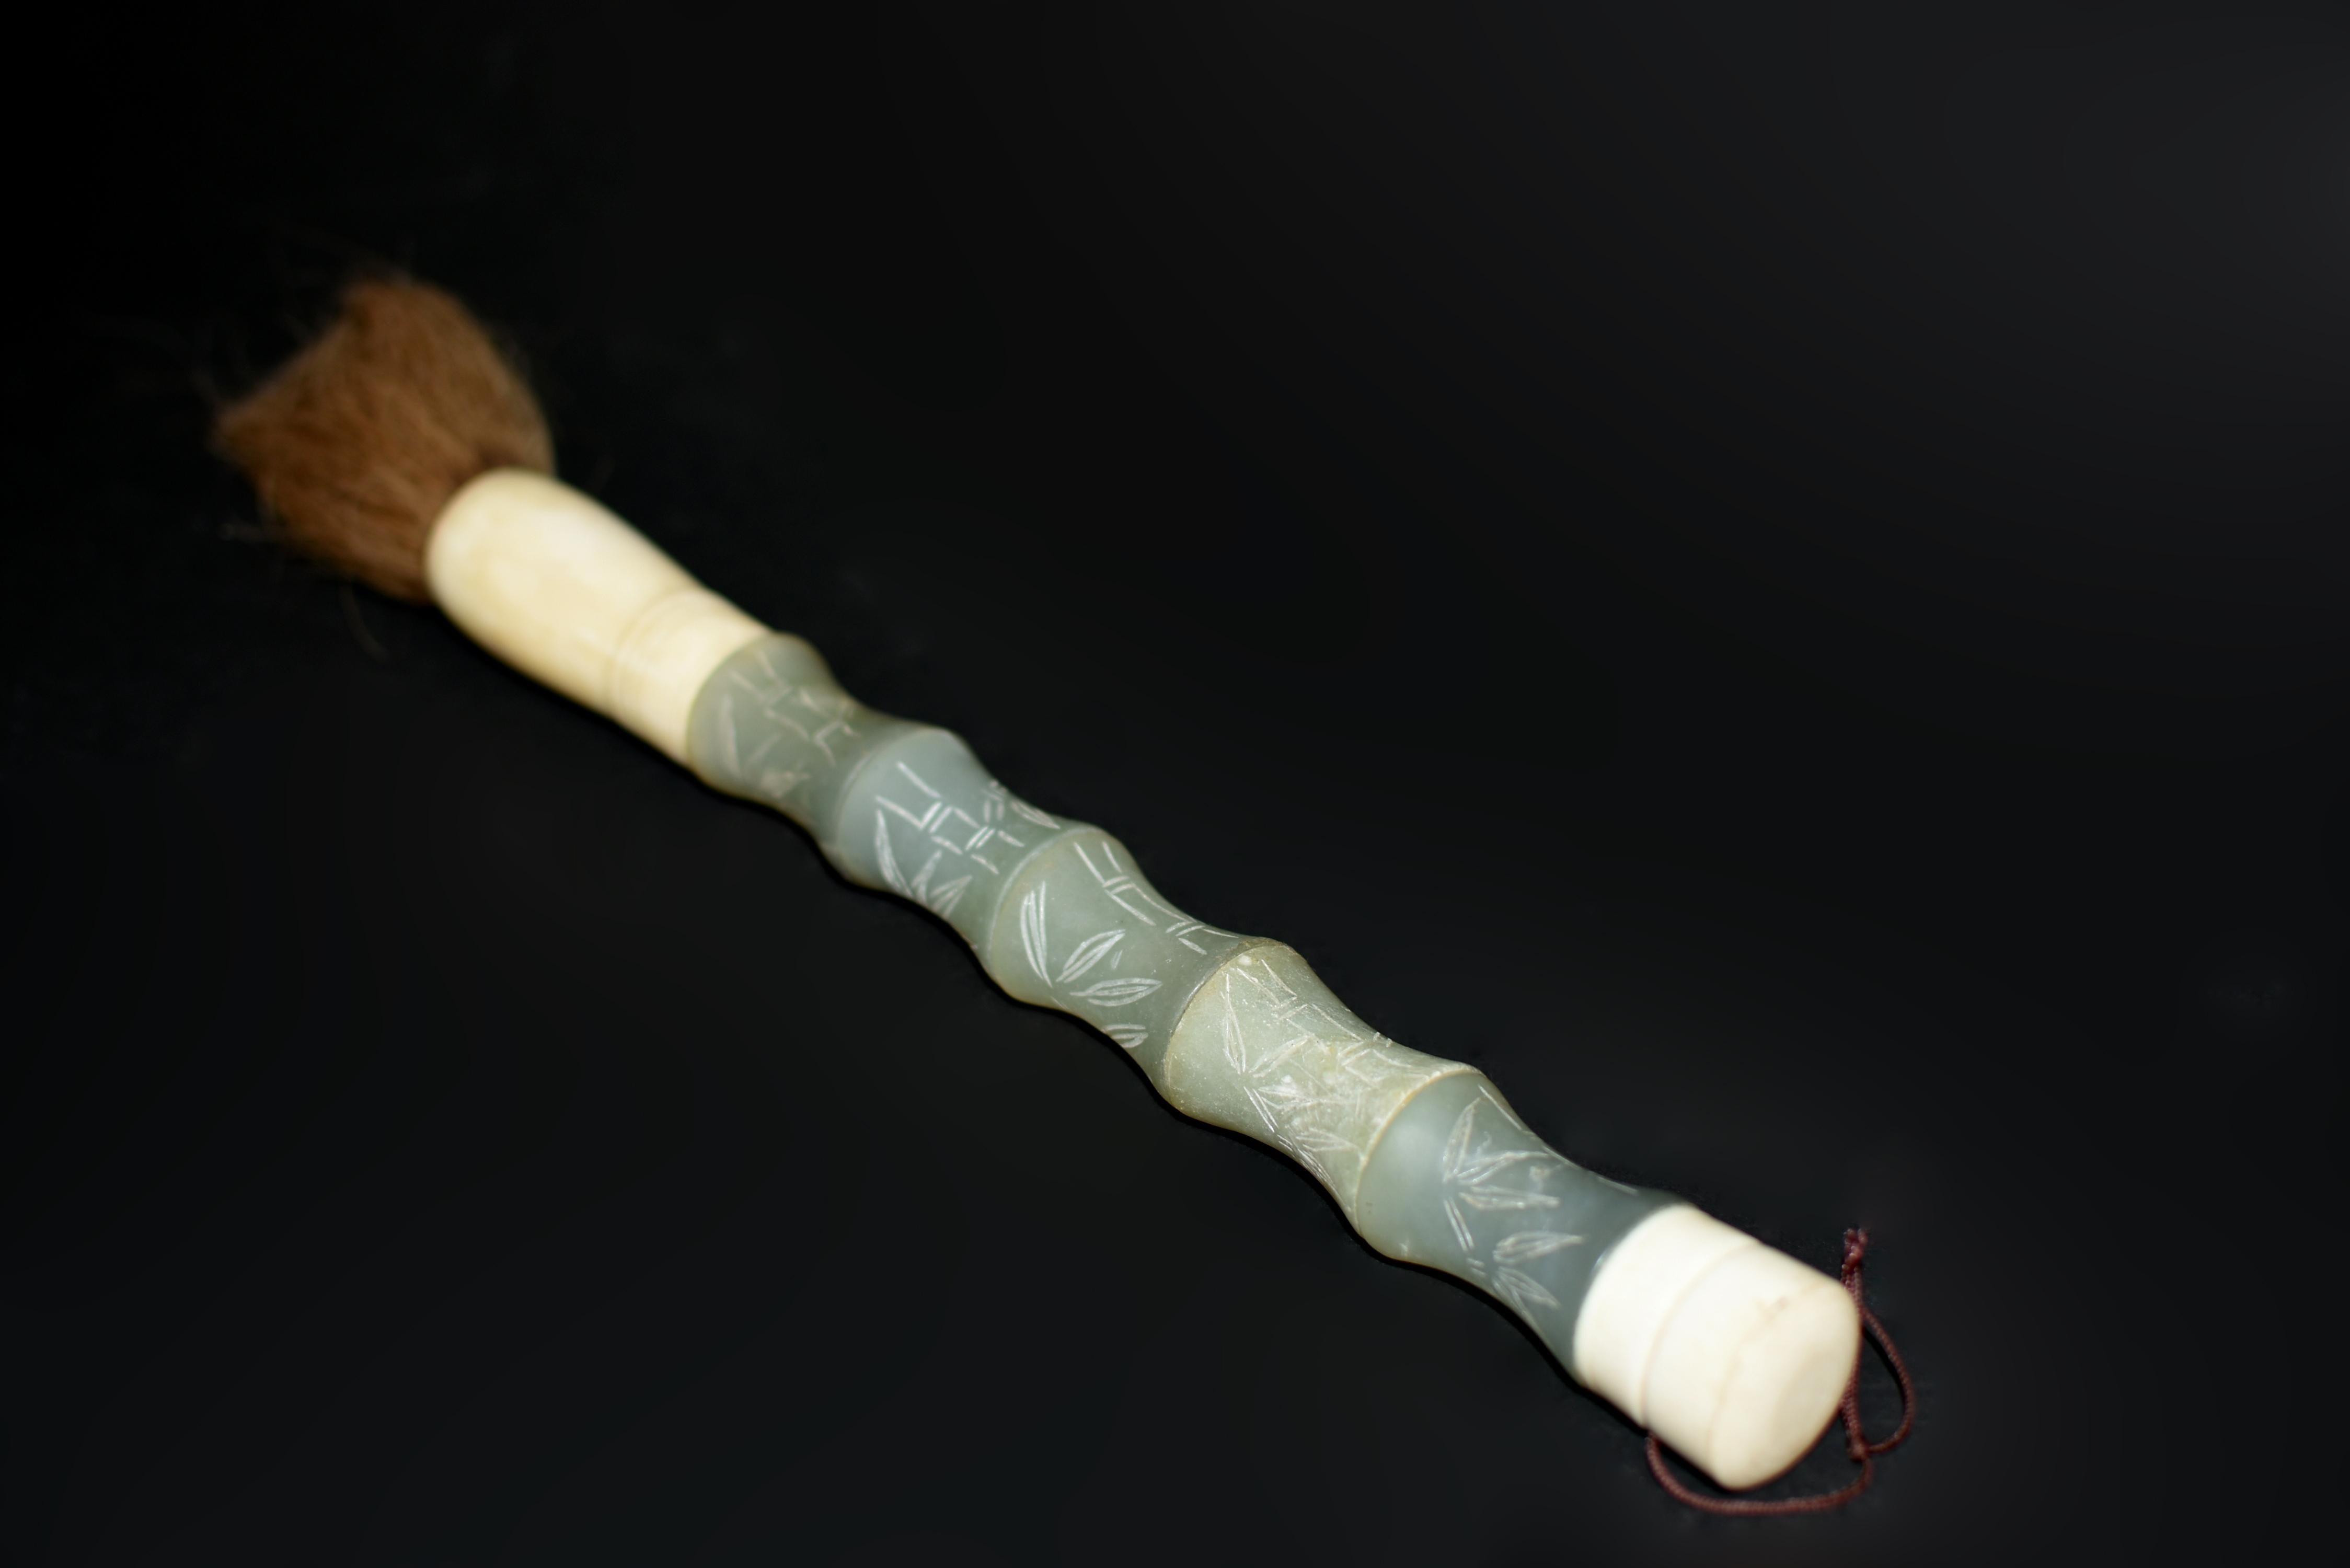 Einzigartige, extra große, seltene blaue Serpentin-Edelsteinbürste in Bambusform mit geschnitzten Bambusblättern. Serpentin ist ein wunderschöner Stein, der wegen seiner Ähnlichkeit mit Nephrit-Jade in Bezug auf Farbe und glänzende Textur sehr